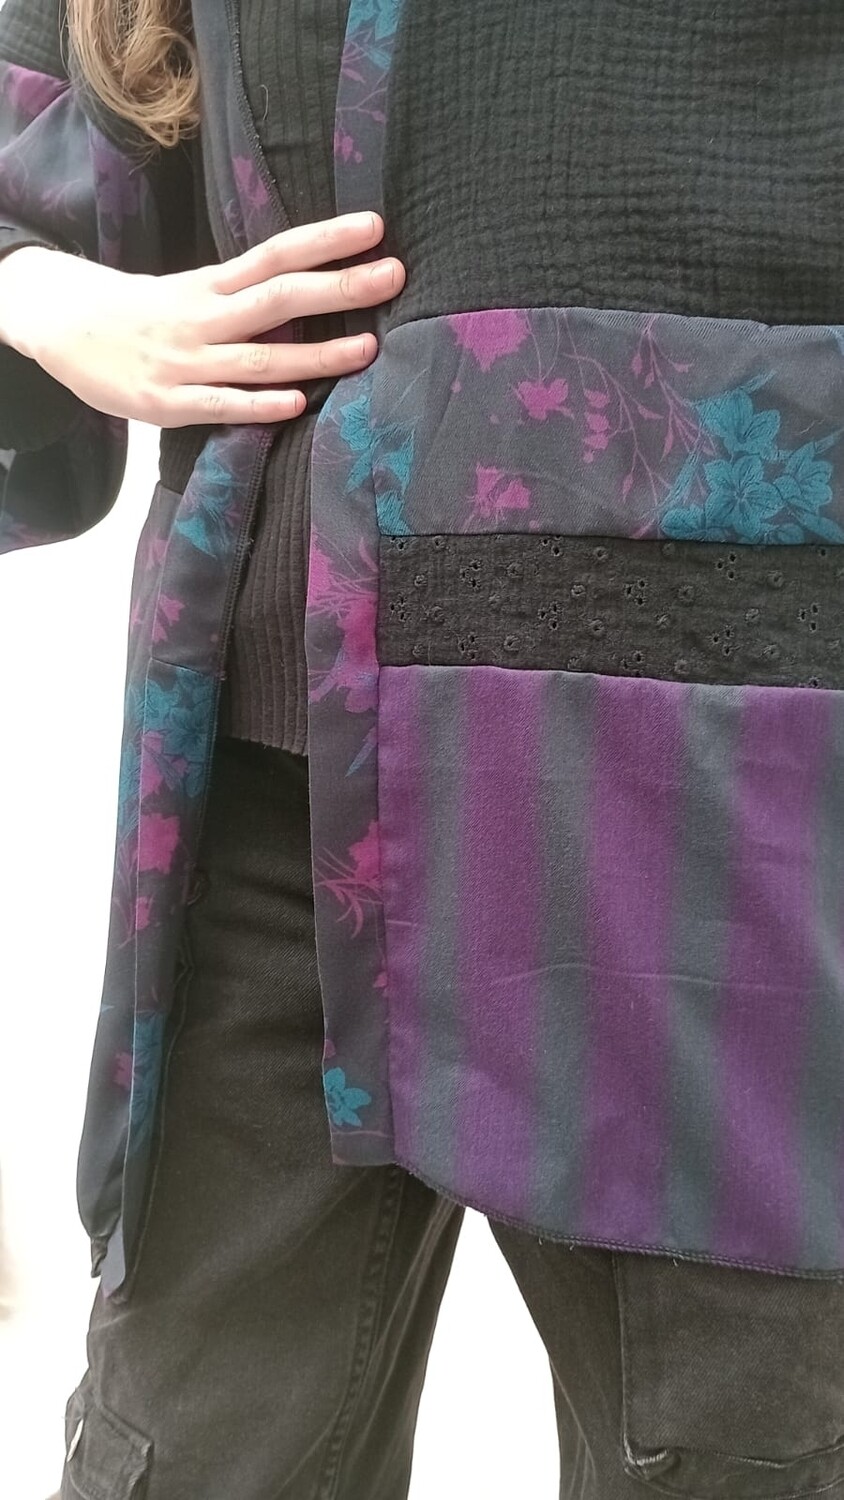 HUMUS kimono in doppia garza di cotone nero, fantasia fiori viola e ottanio in viscosa, righe blu e viola e sangallo nero. 